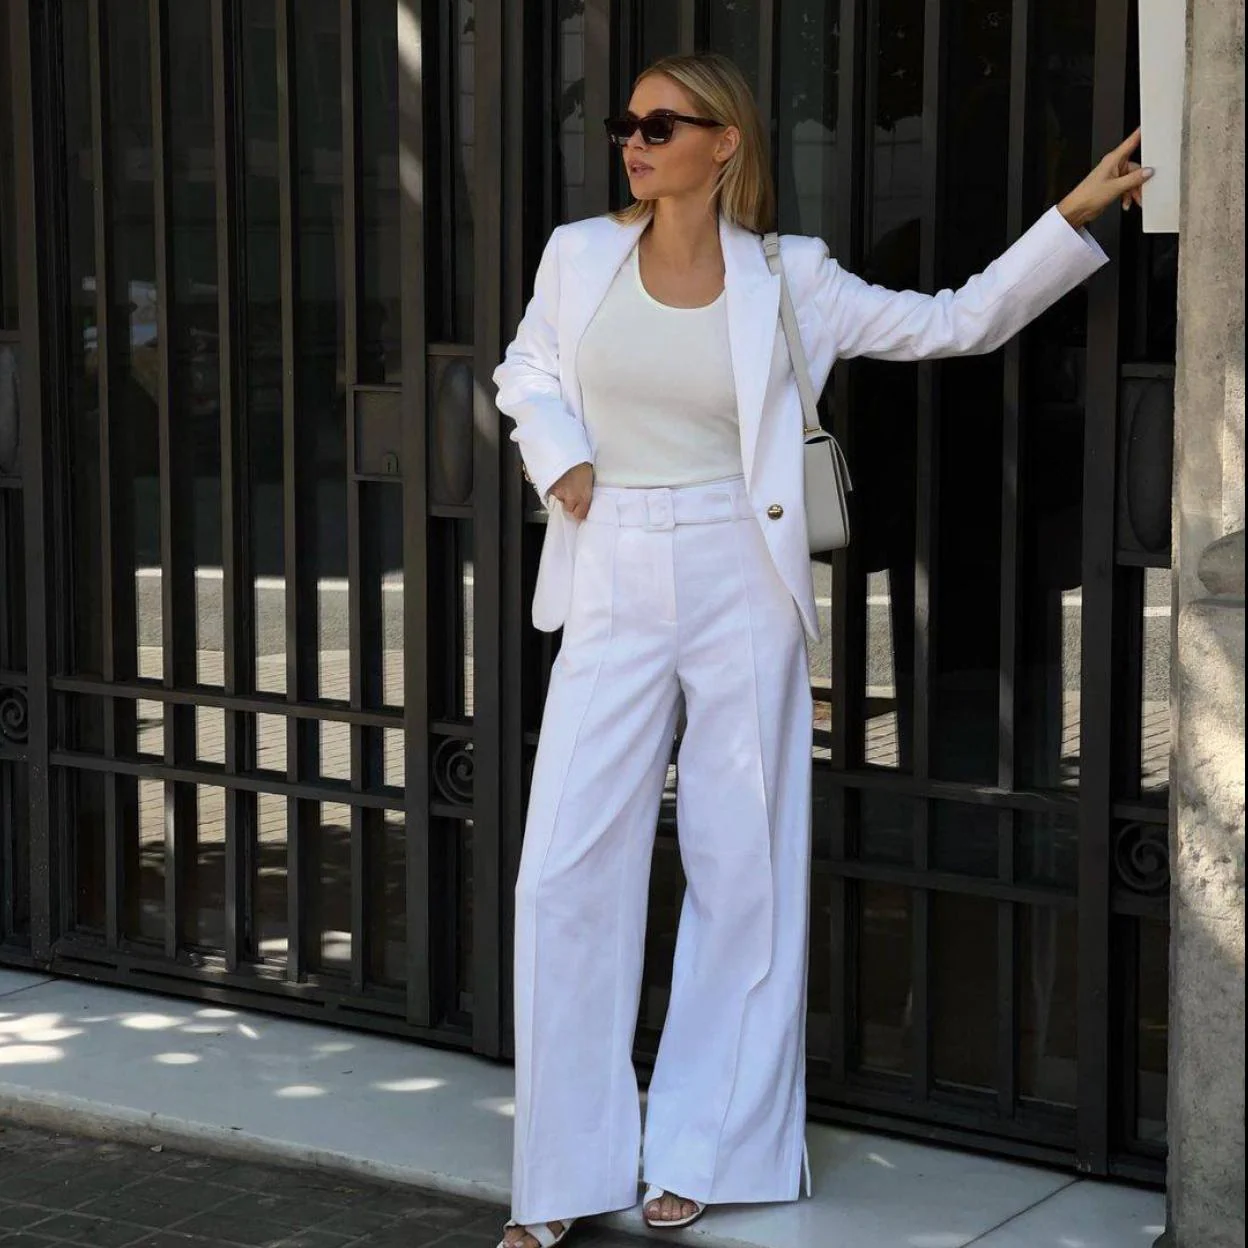 MODA: El traje blanco es tendencia con efecto rejuvenecedor las mejor vestidas llevarán esta primavera | Mujer Hoy